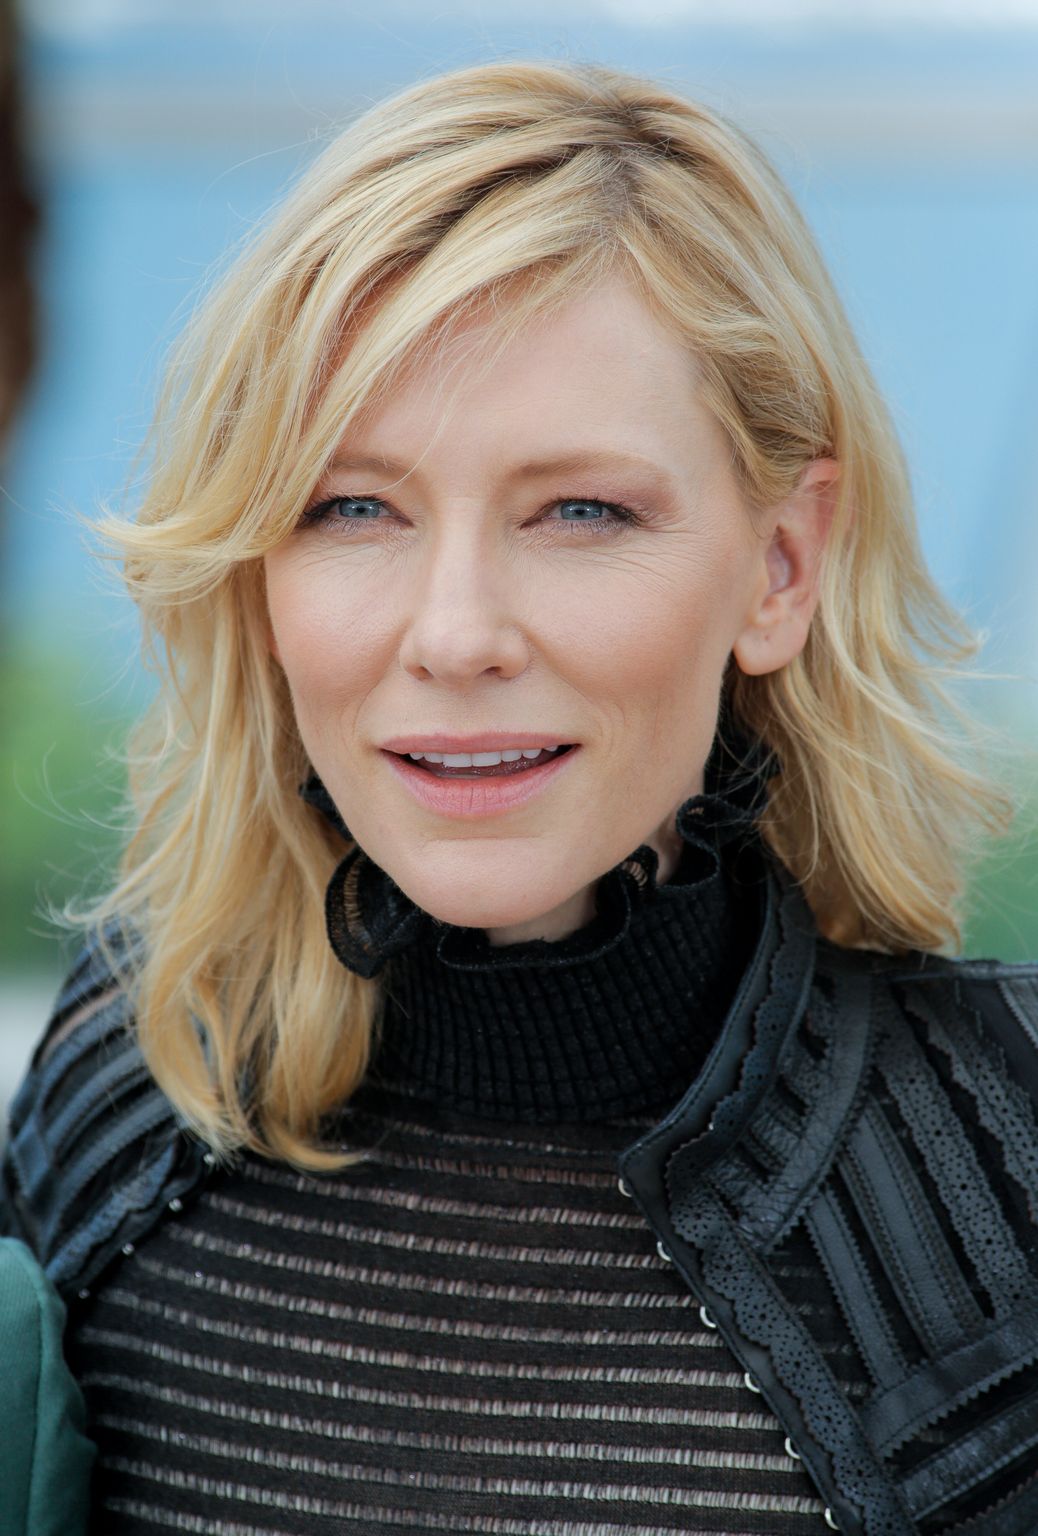 Cate Blanchett photo 1340 of 1990 pics, wallpaper - photo #775119 ...